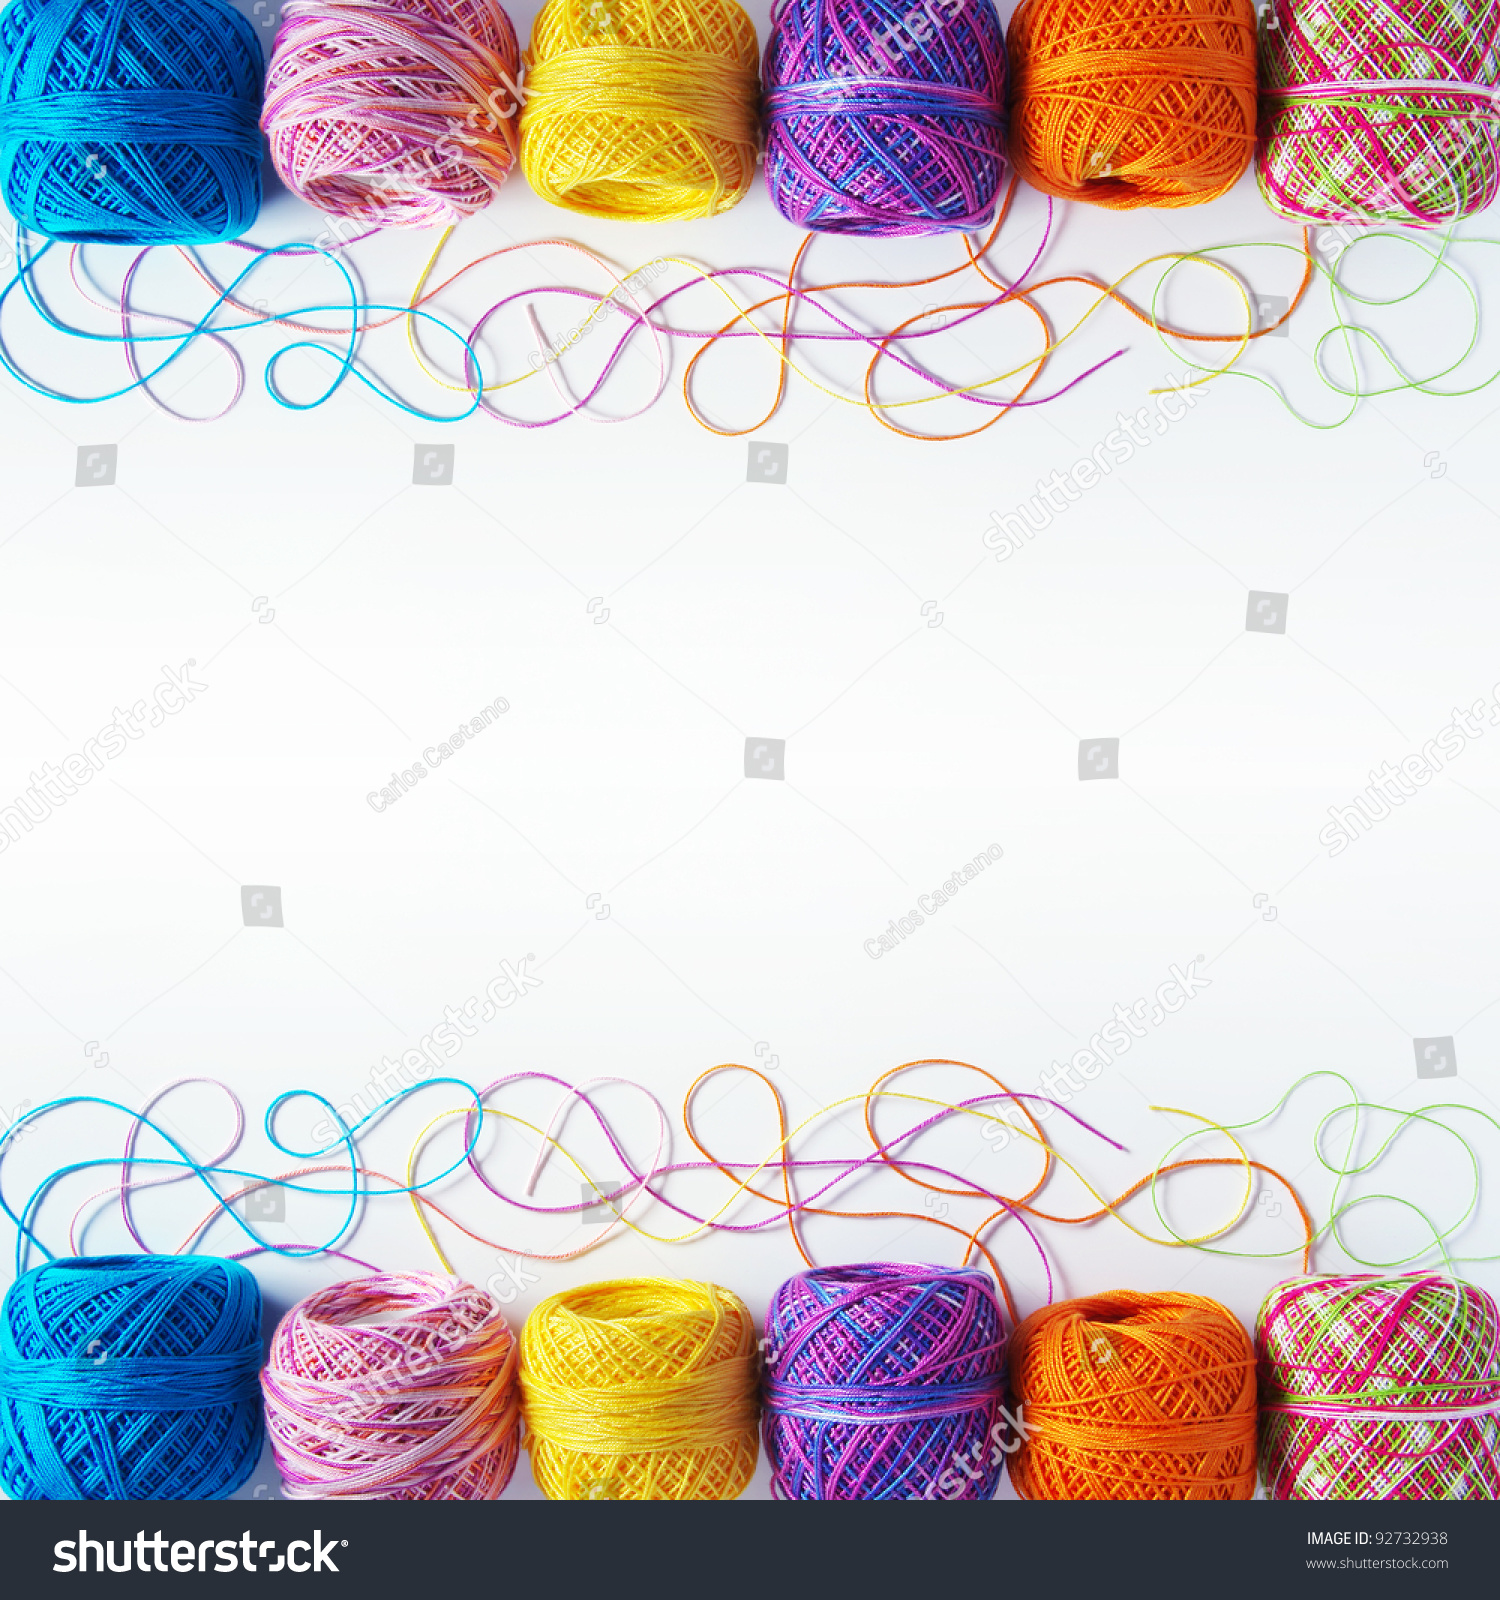 Bạn đang tìm kiếm sợi len đan chất lượng để sáng tạo ra những món đồ thủ công xinh xắn? Hãy đến với chúng tôi và khám phá ngay bộ sưu tập len sợi đan với nhiều màu sắc đa dạng và đẹp mắt nhé!